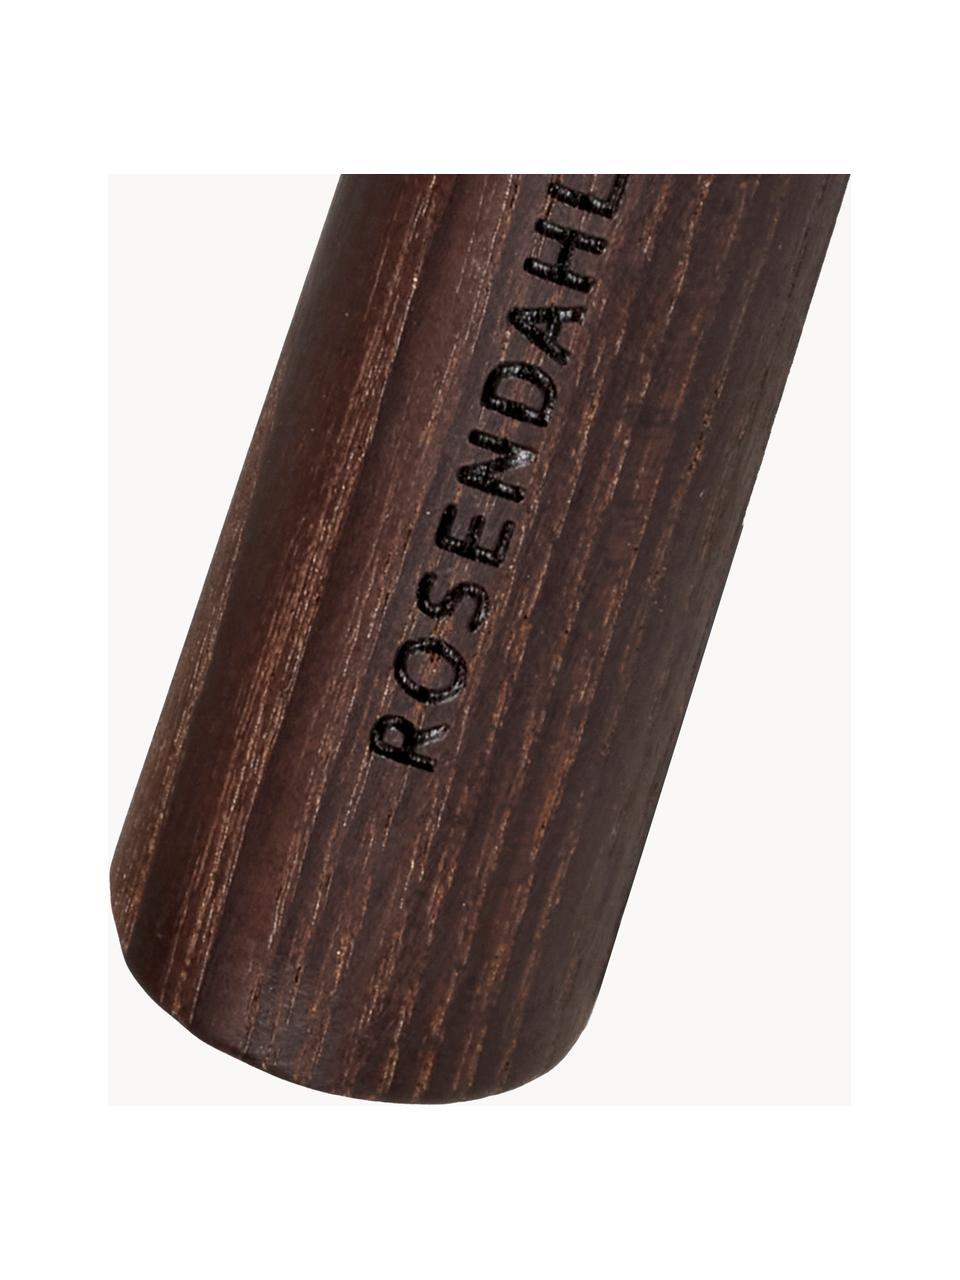 Fouet avec manche en bois de frêne RÅ, Argenté, bois de frêne, long. 29 cm